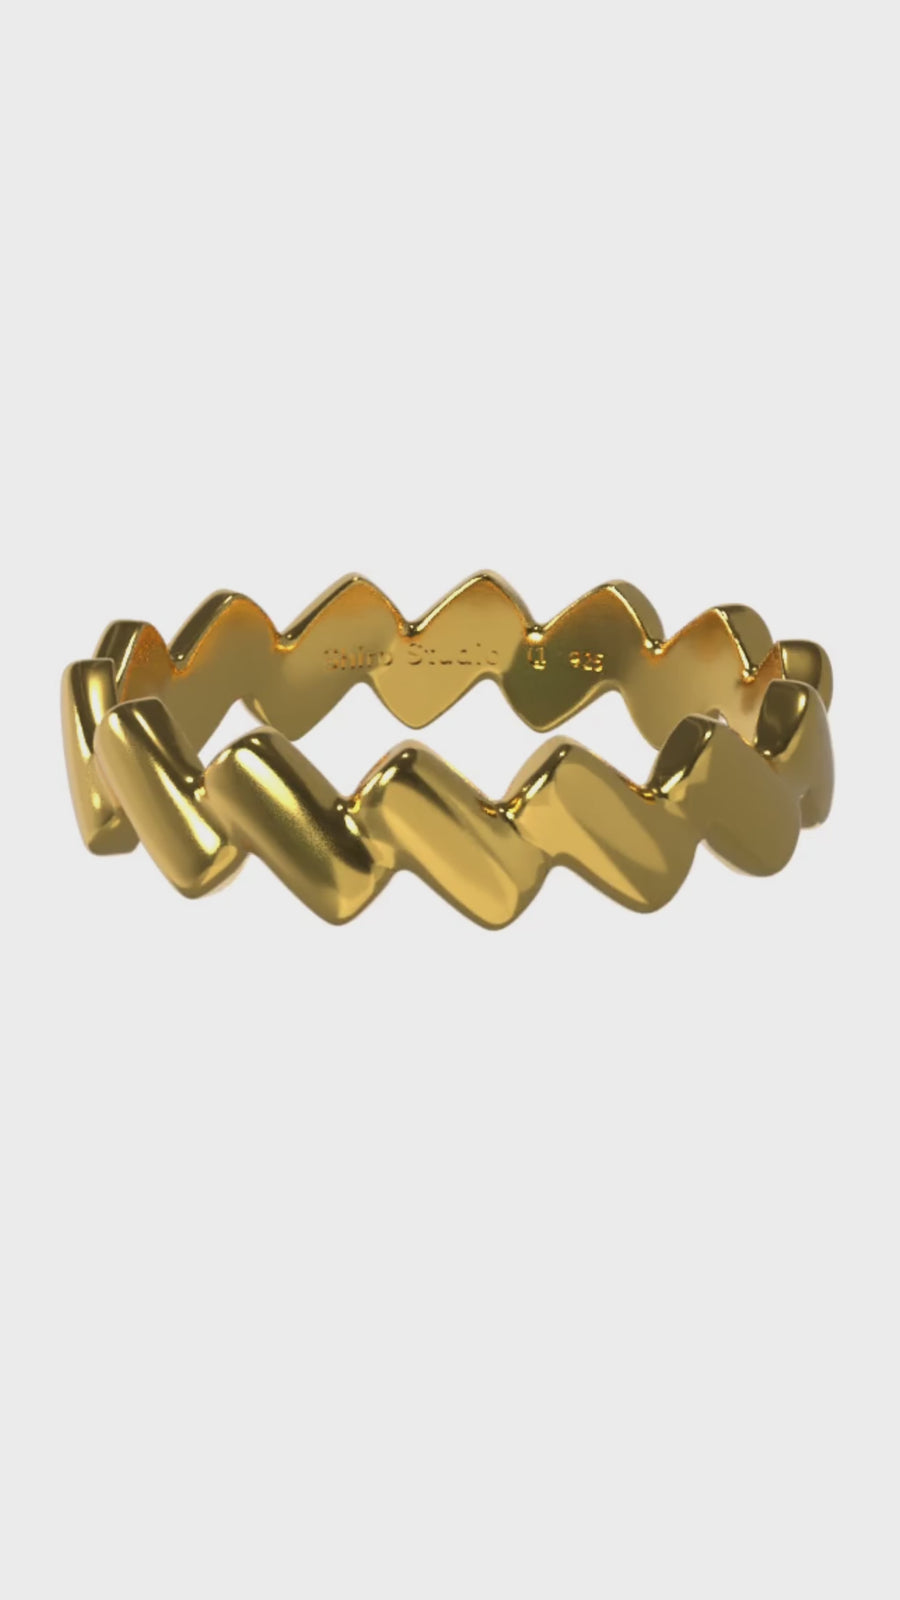 Aquarius Ring - 14K Gold